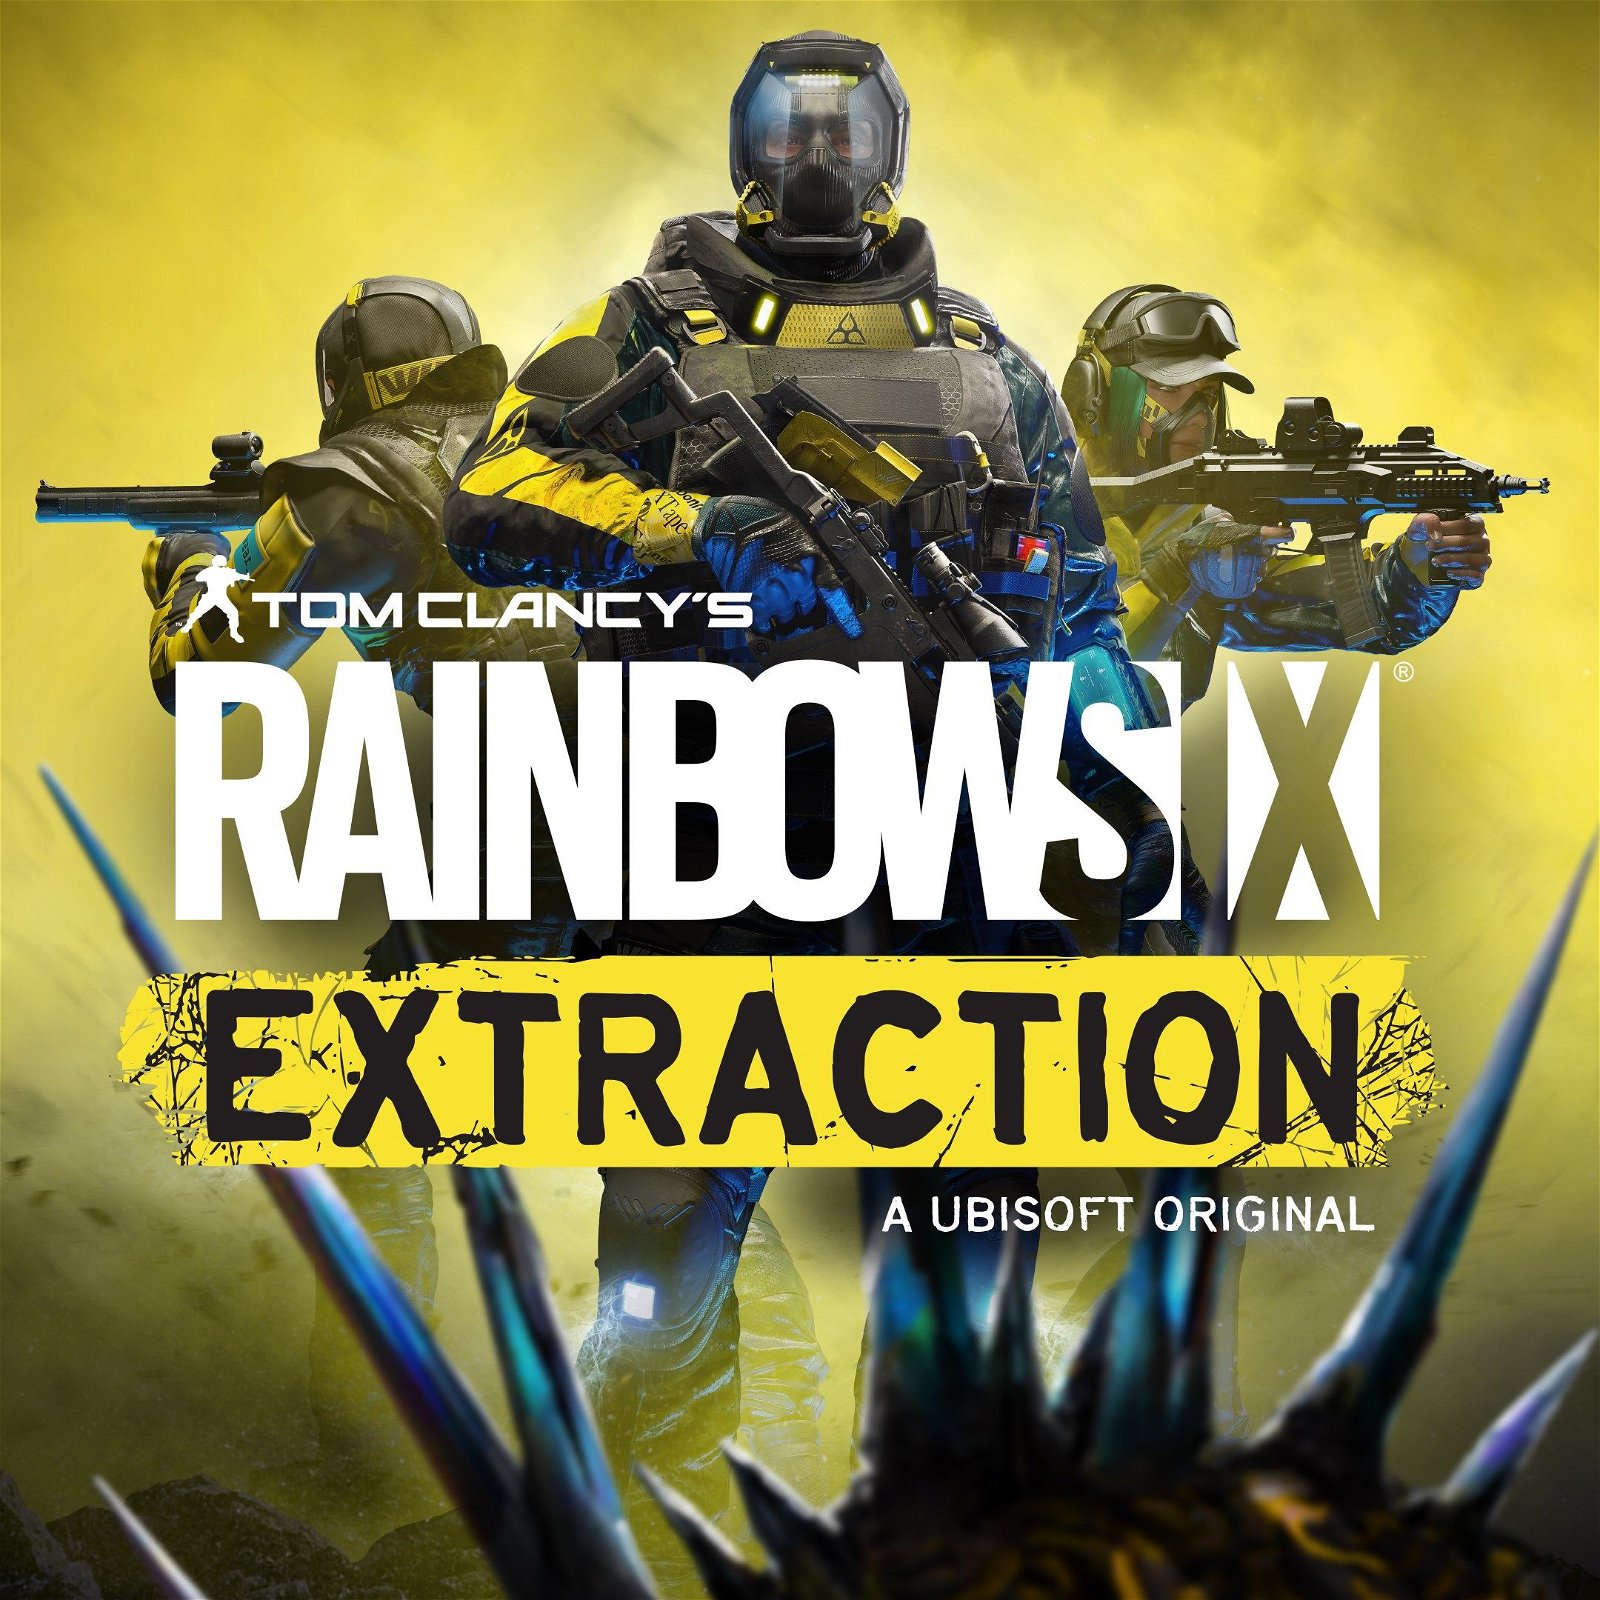 Image of Tom Clancy’s Rainbow Six Extraction